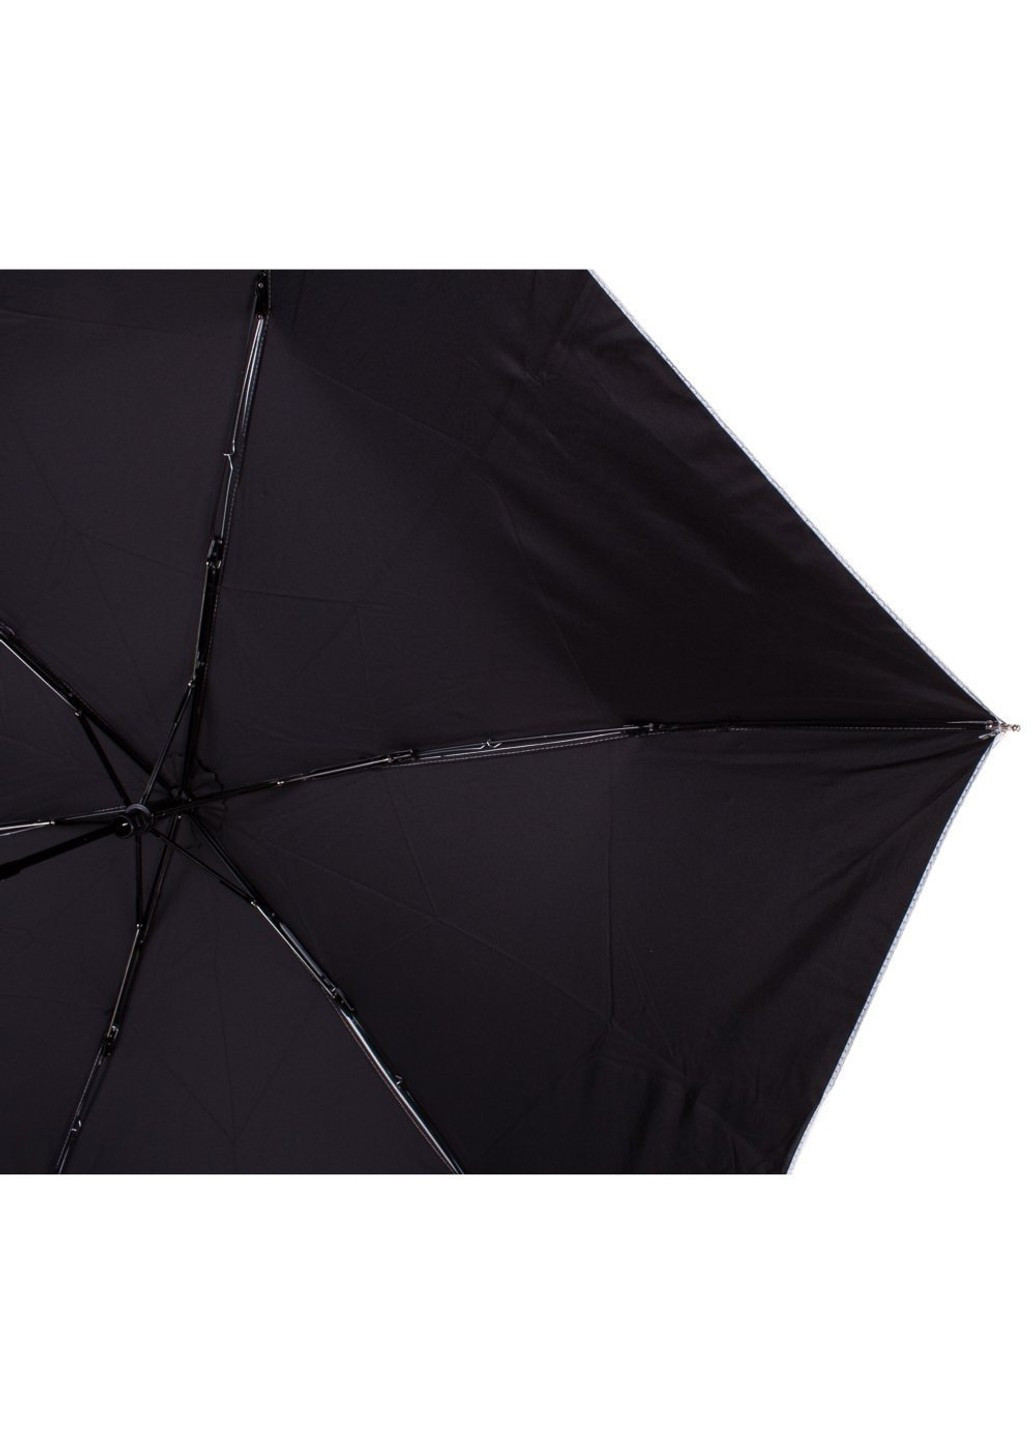 Черный - Механический женский зонтик с функцией селфи-палки u43998-2 Happy Rain (262982681)